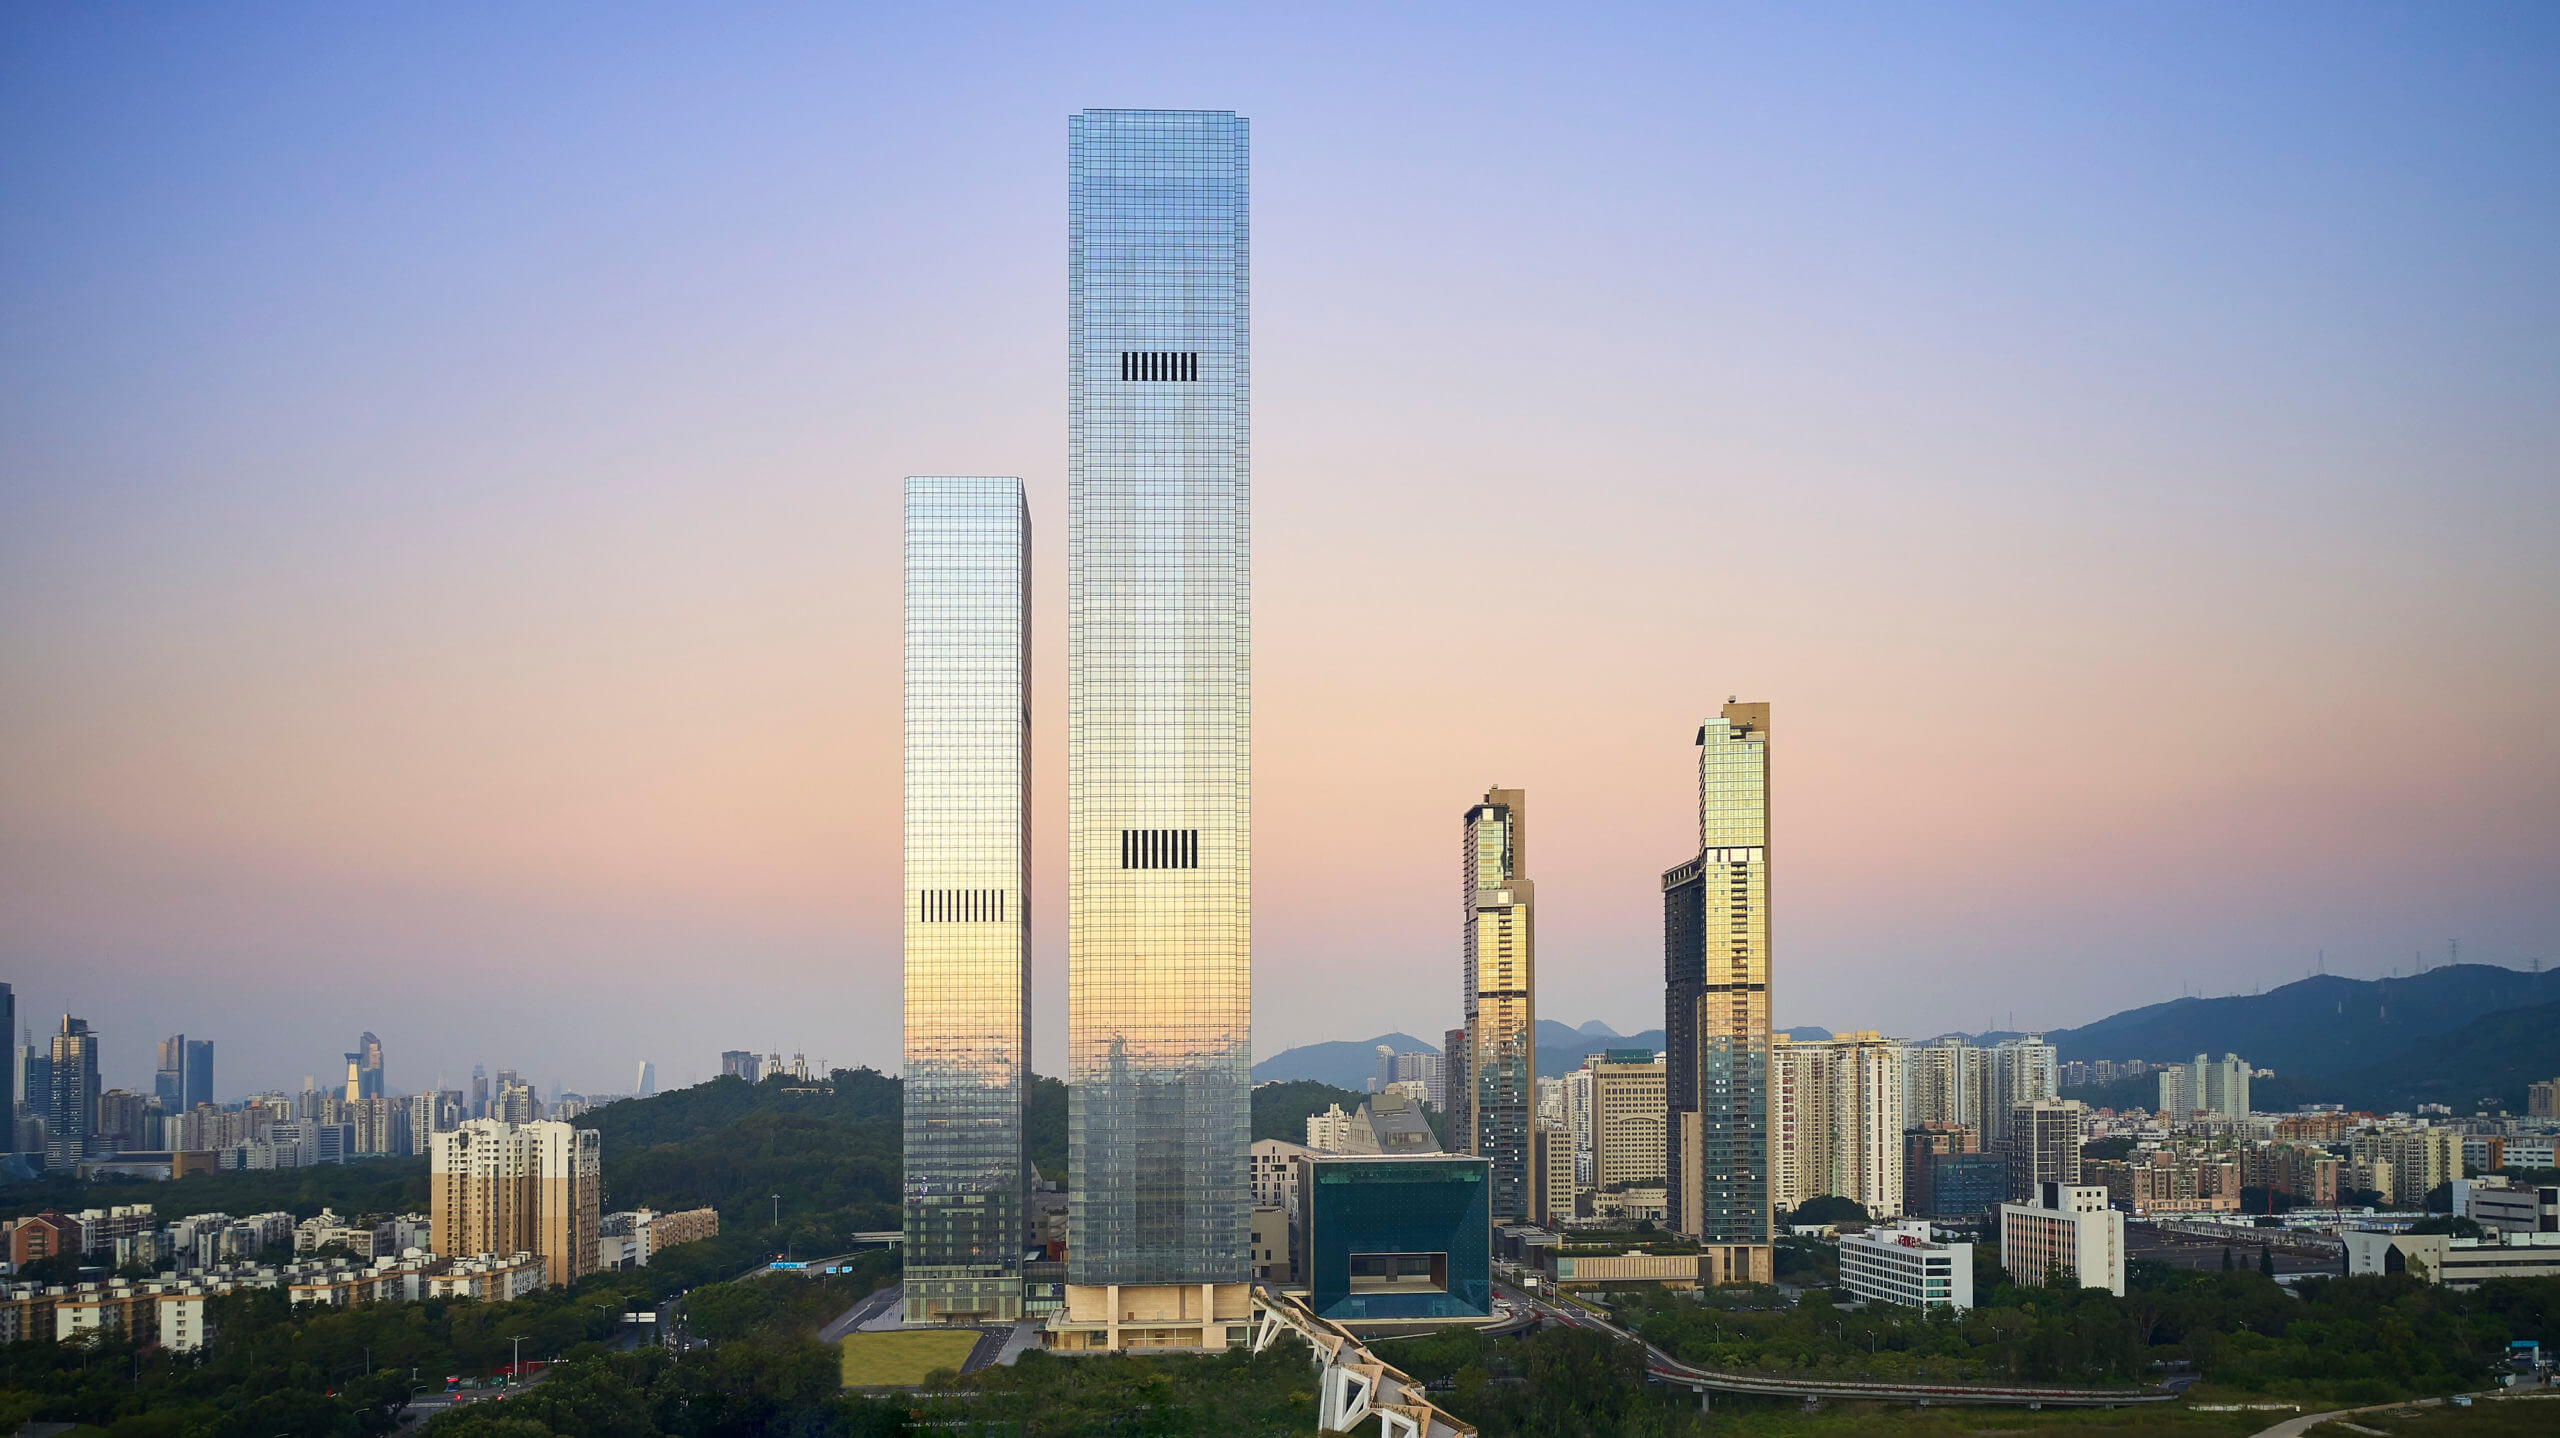 Shenzhen's shum yip upperhills tower one